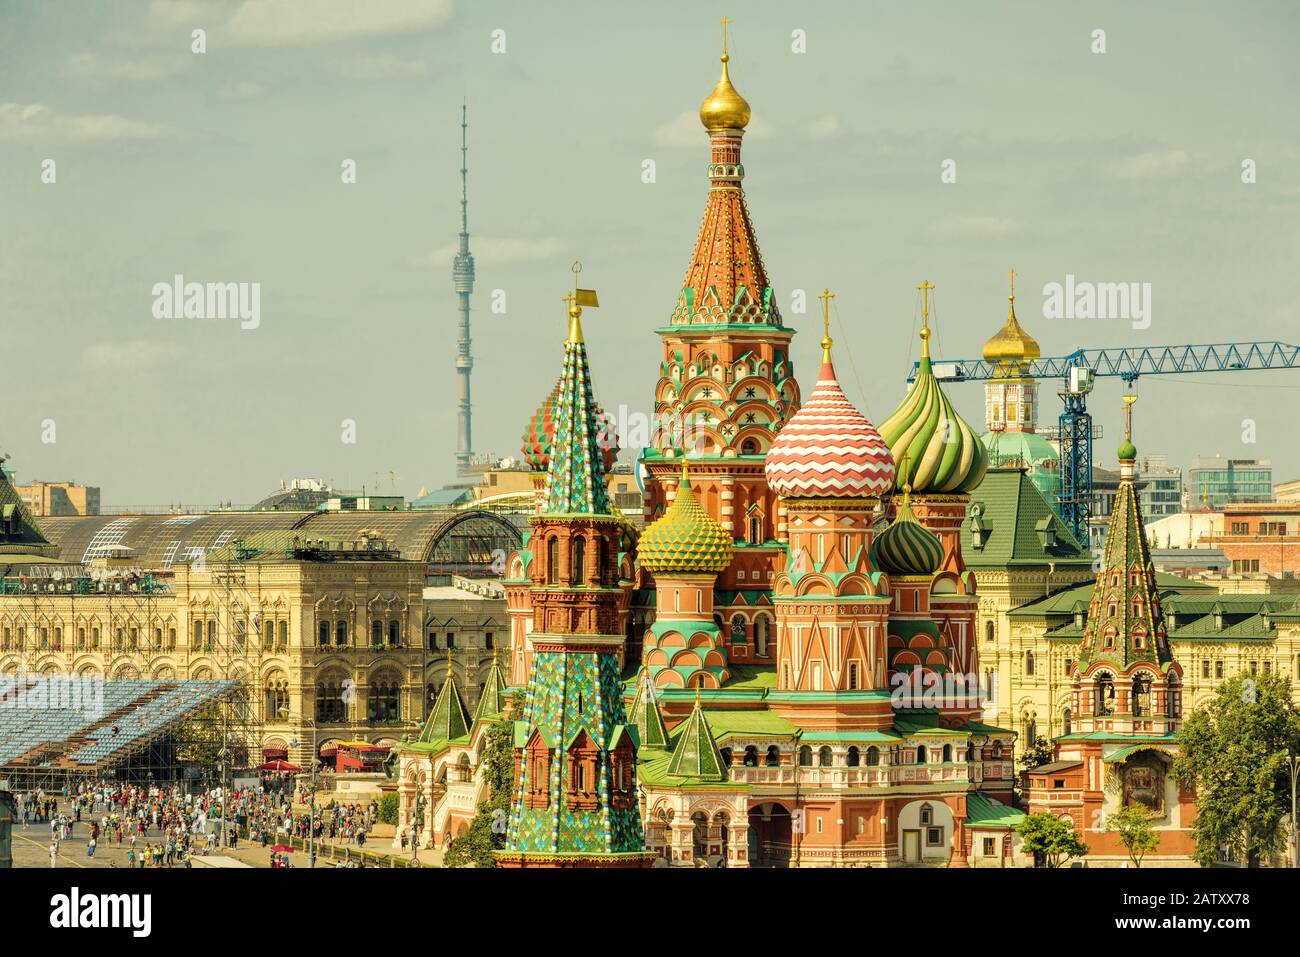 Die Kathedrale von Saint Basil auf dem Roten Platz in Moskau, Russland. Der Rote Platz ist die wichtigste Touristenattraktion Moskaus. Stockfoto